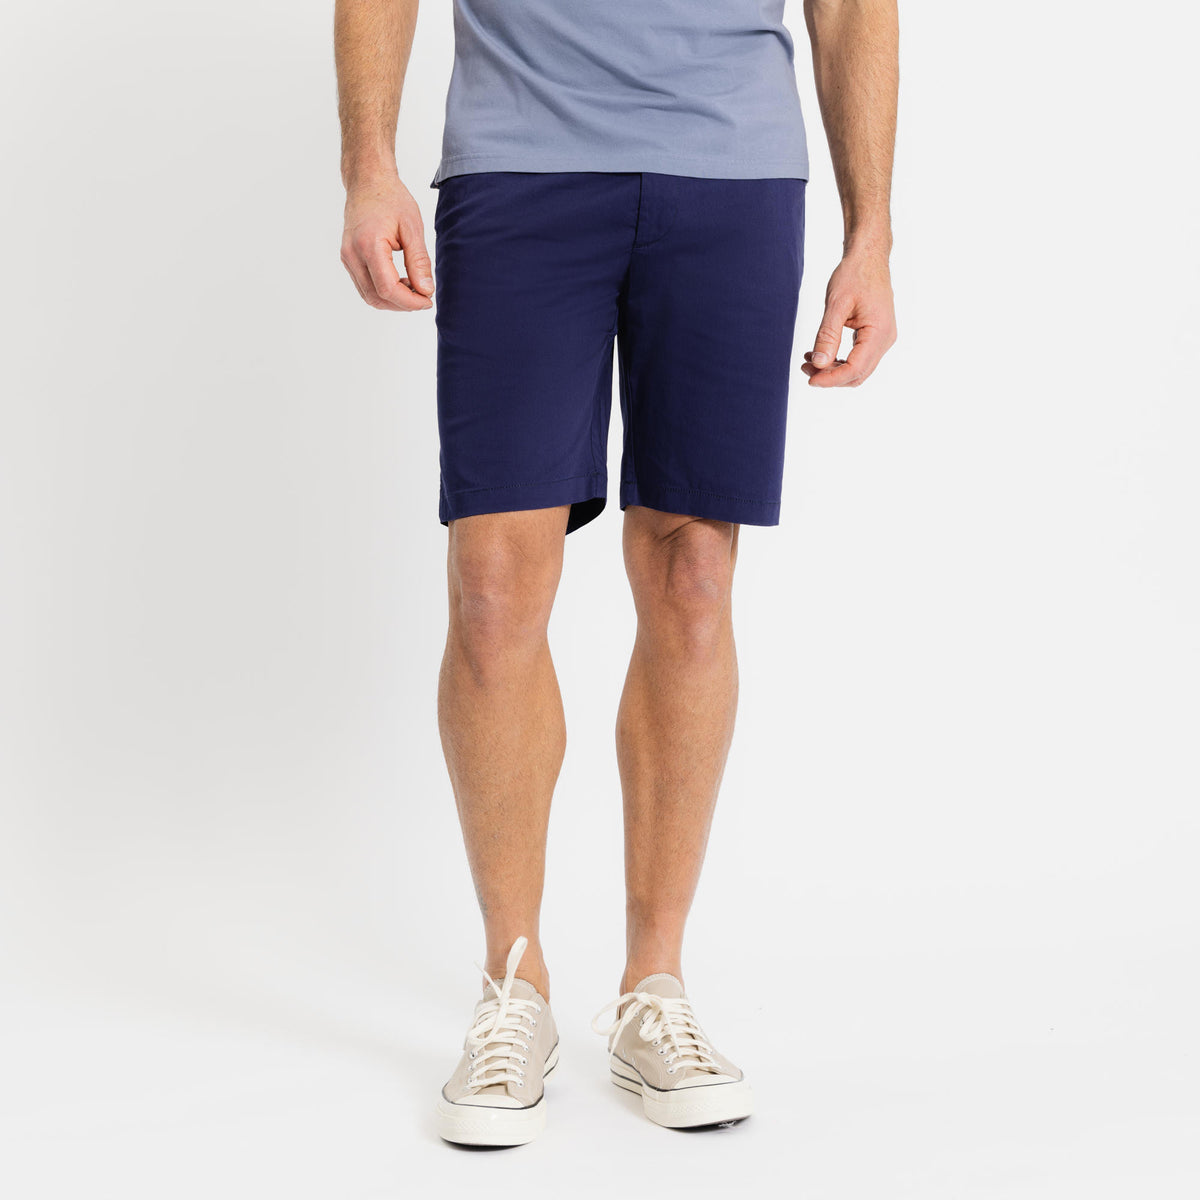 SPOKE Friday Shorts - Indigo Custom Fit Shorts - SPOKE